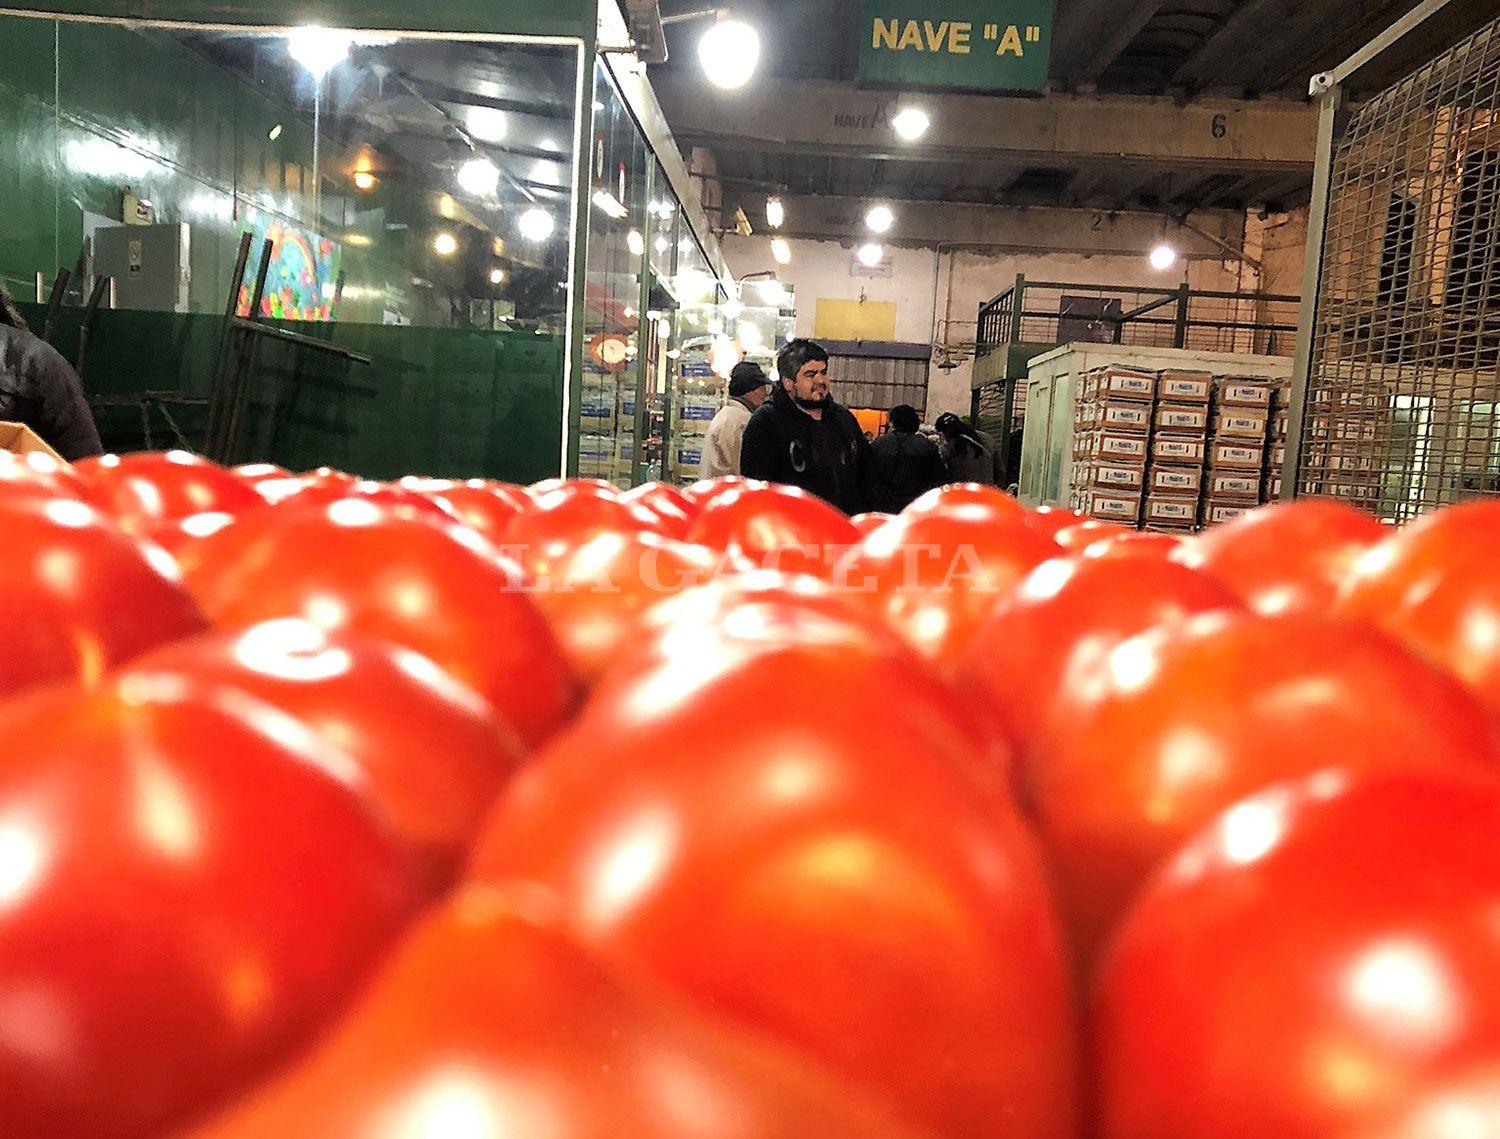 EN PRECIO. Un cajón de tomate de primera calidad cuesta alrededor de $250, súper económico.